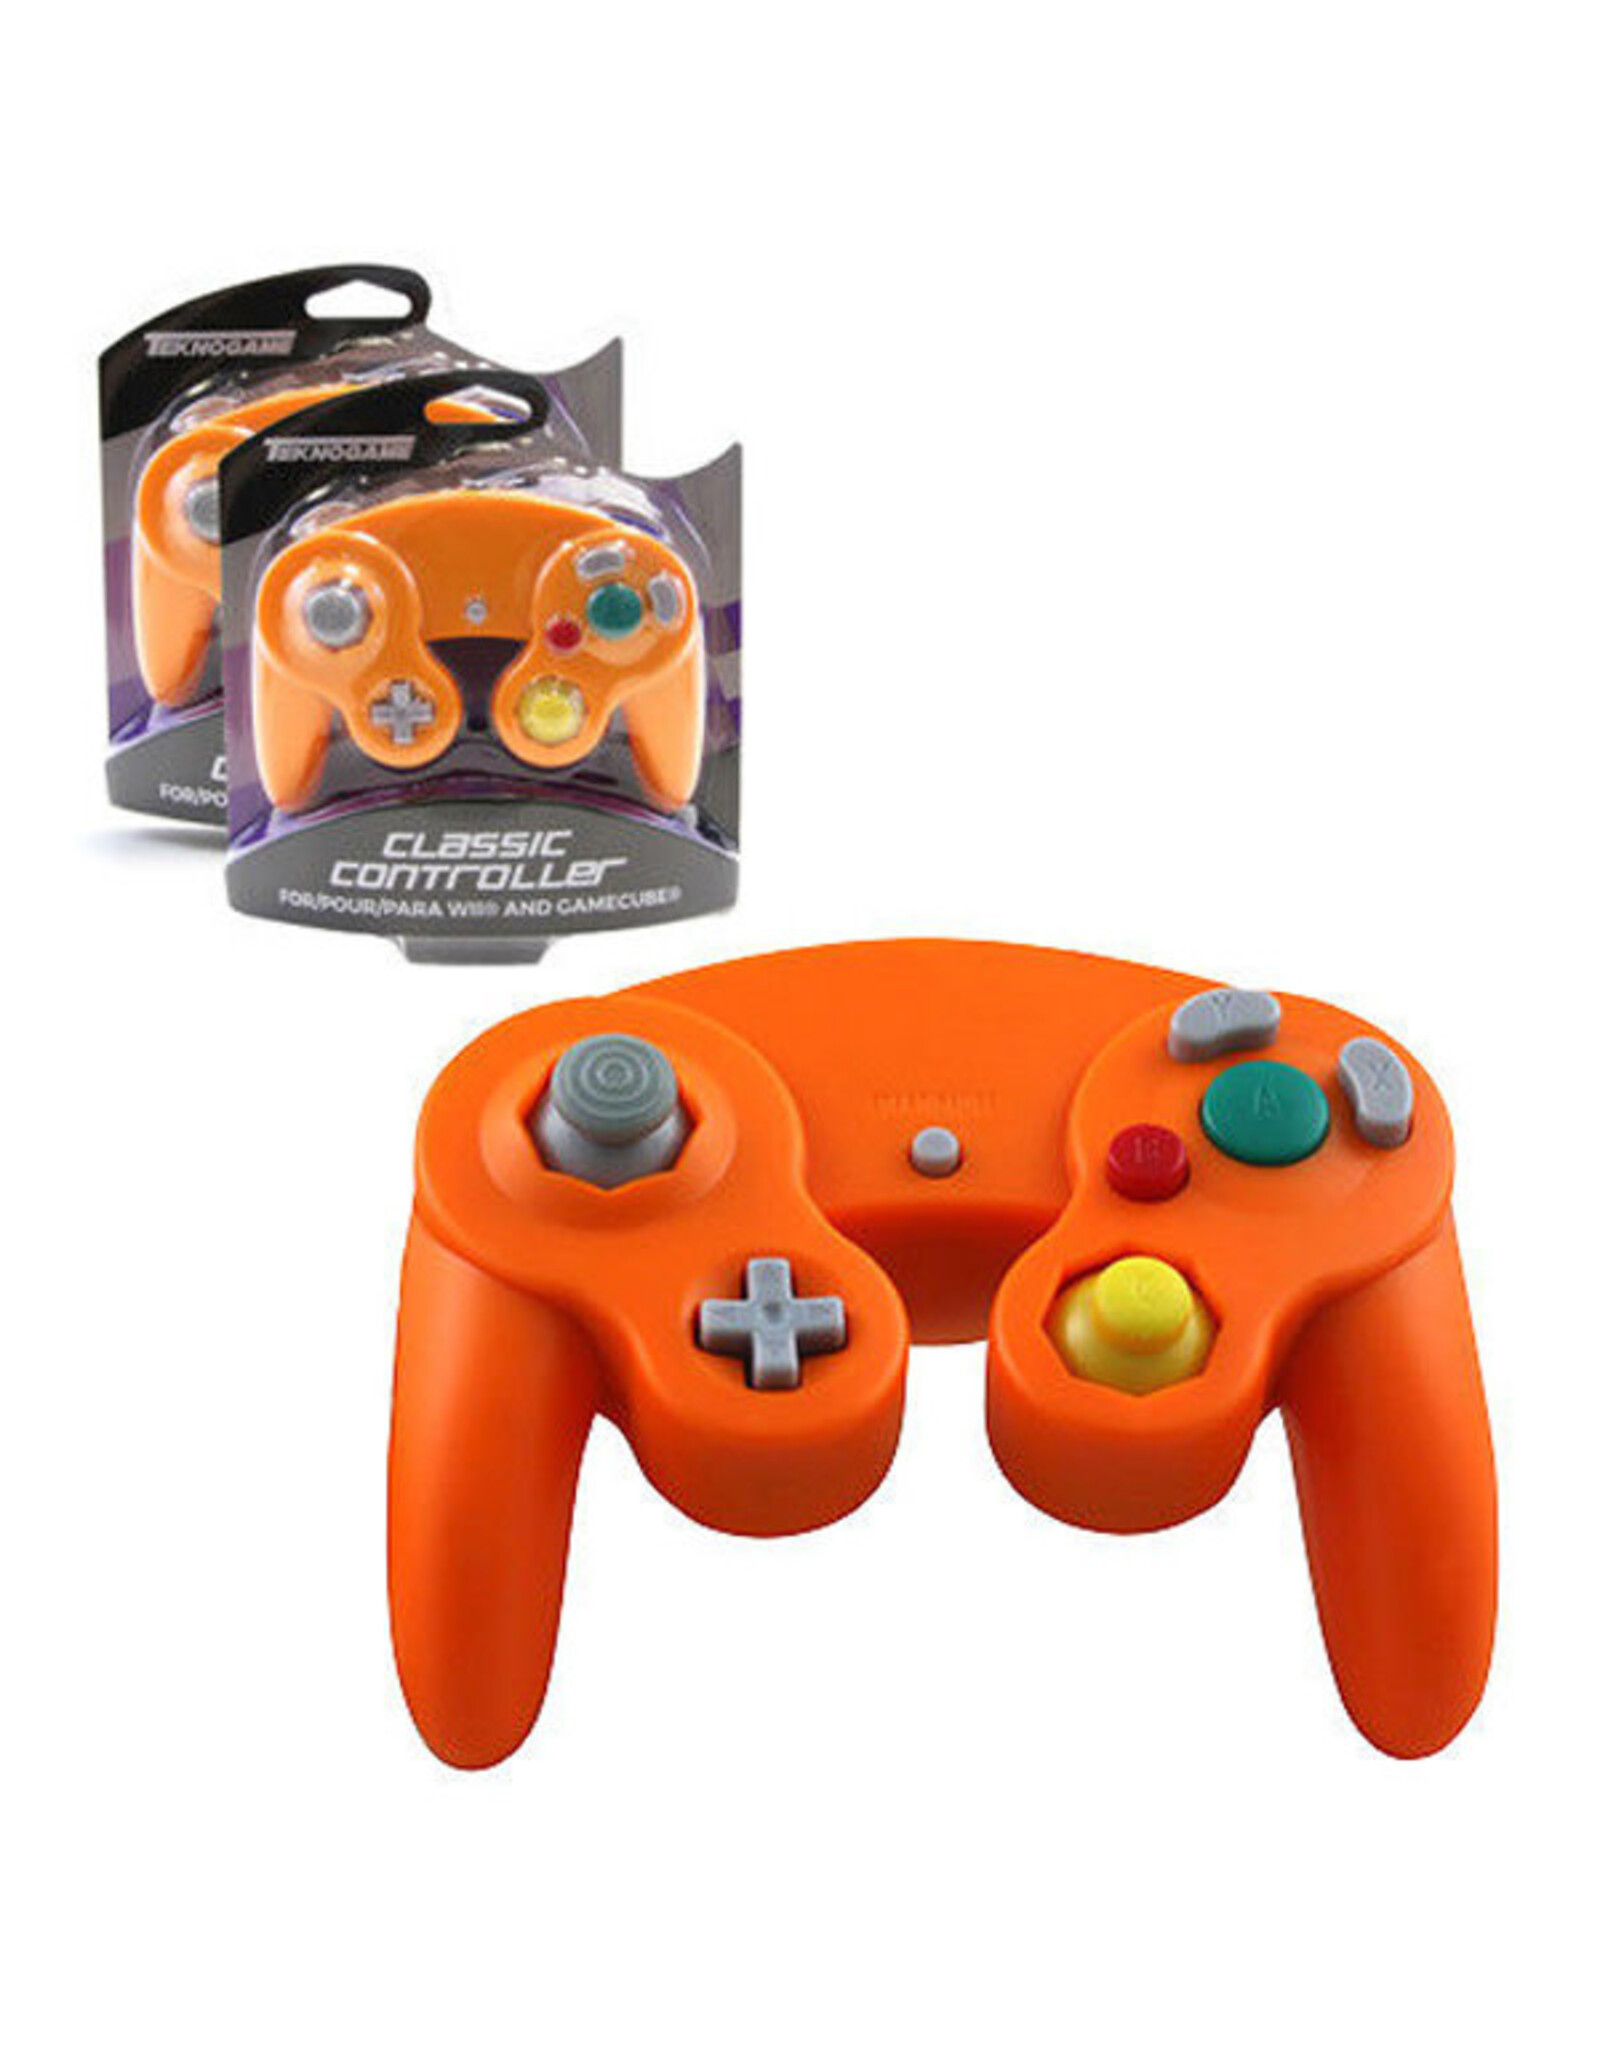 Gamecube Gamecube Controller - Orange, Teknogame (Brand New)